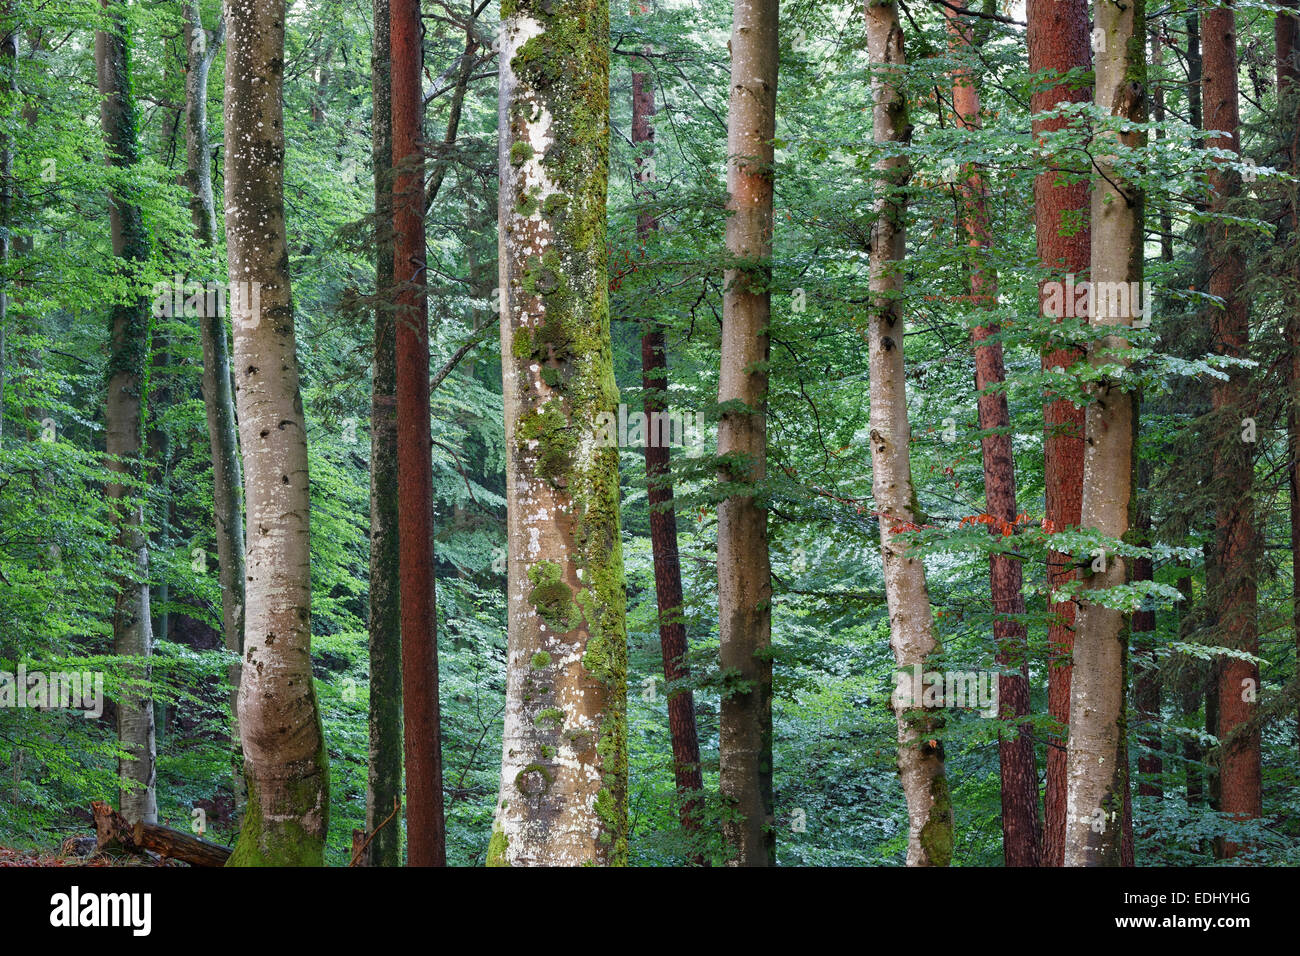 Mixed forest, Icking, Upper Bavaria, Bavaria, Germany Stock Photo